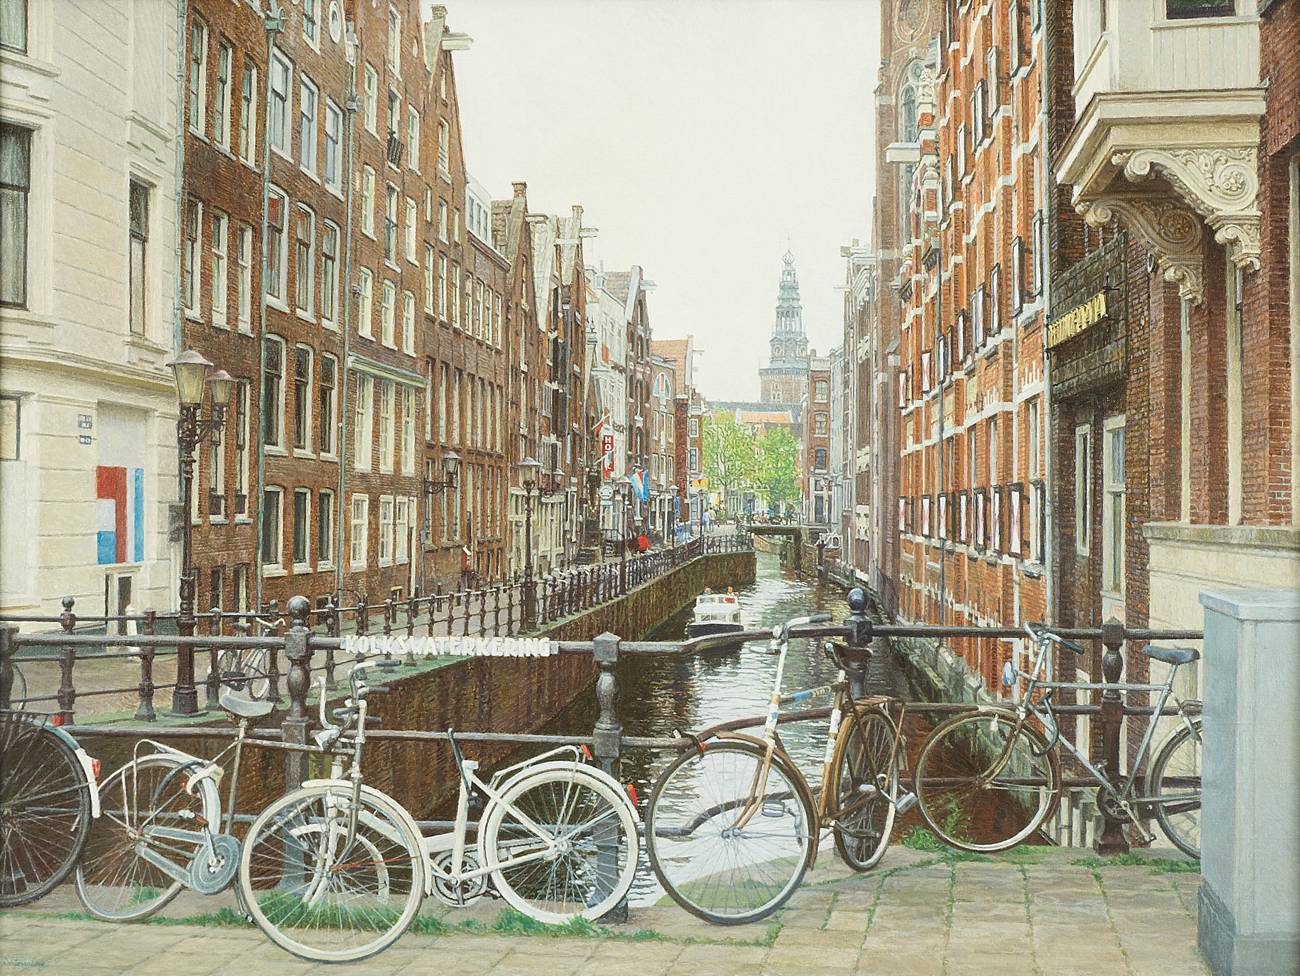 Amsterdam, Oudezijds Kolk (60 x 80), Igor Shterenberg 2010